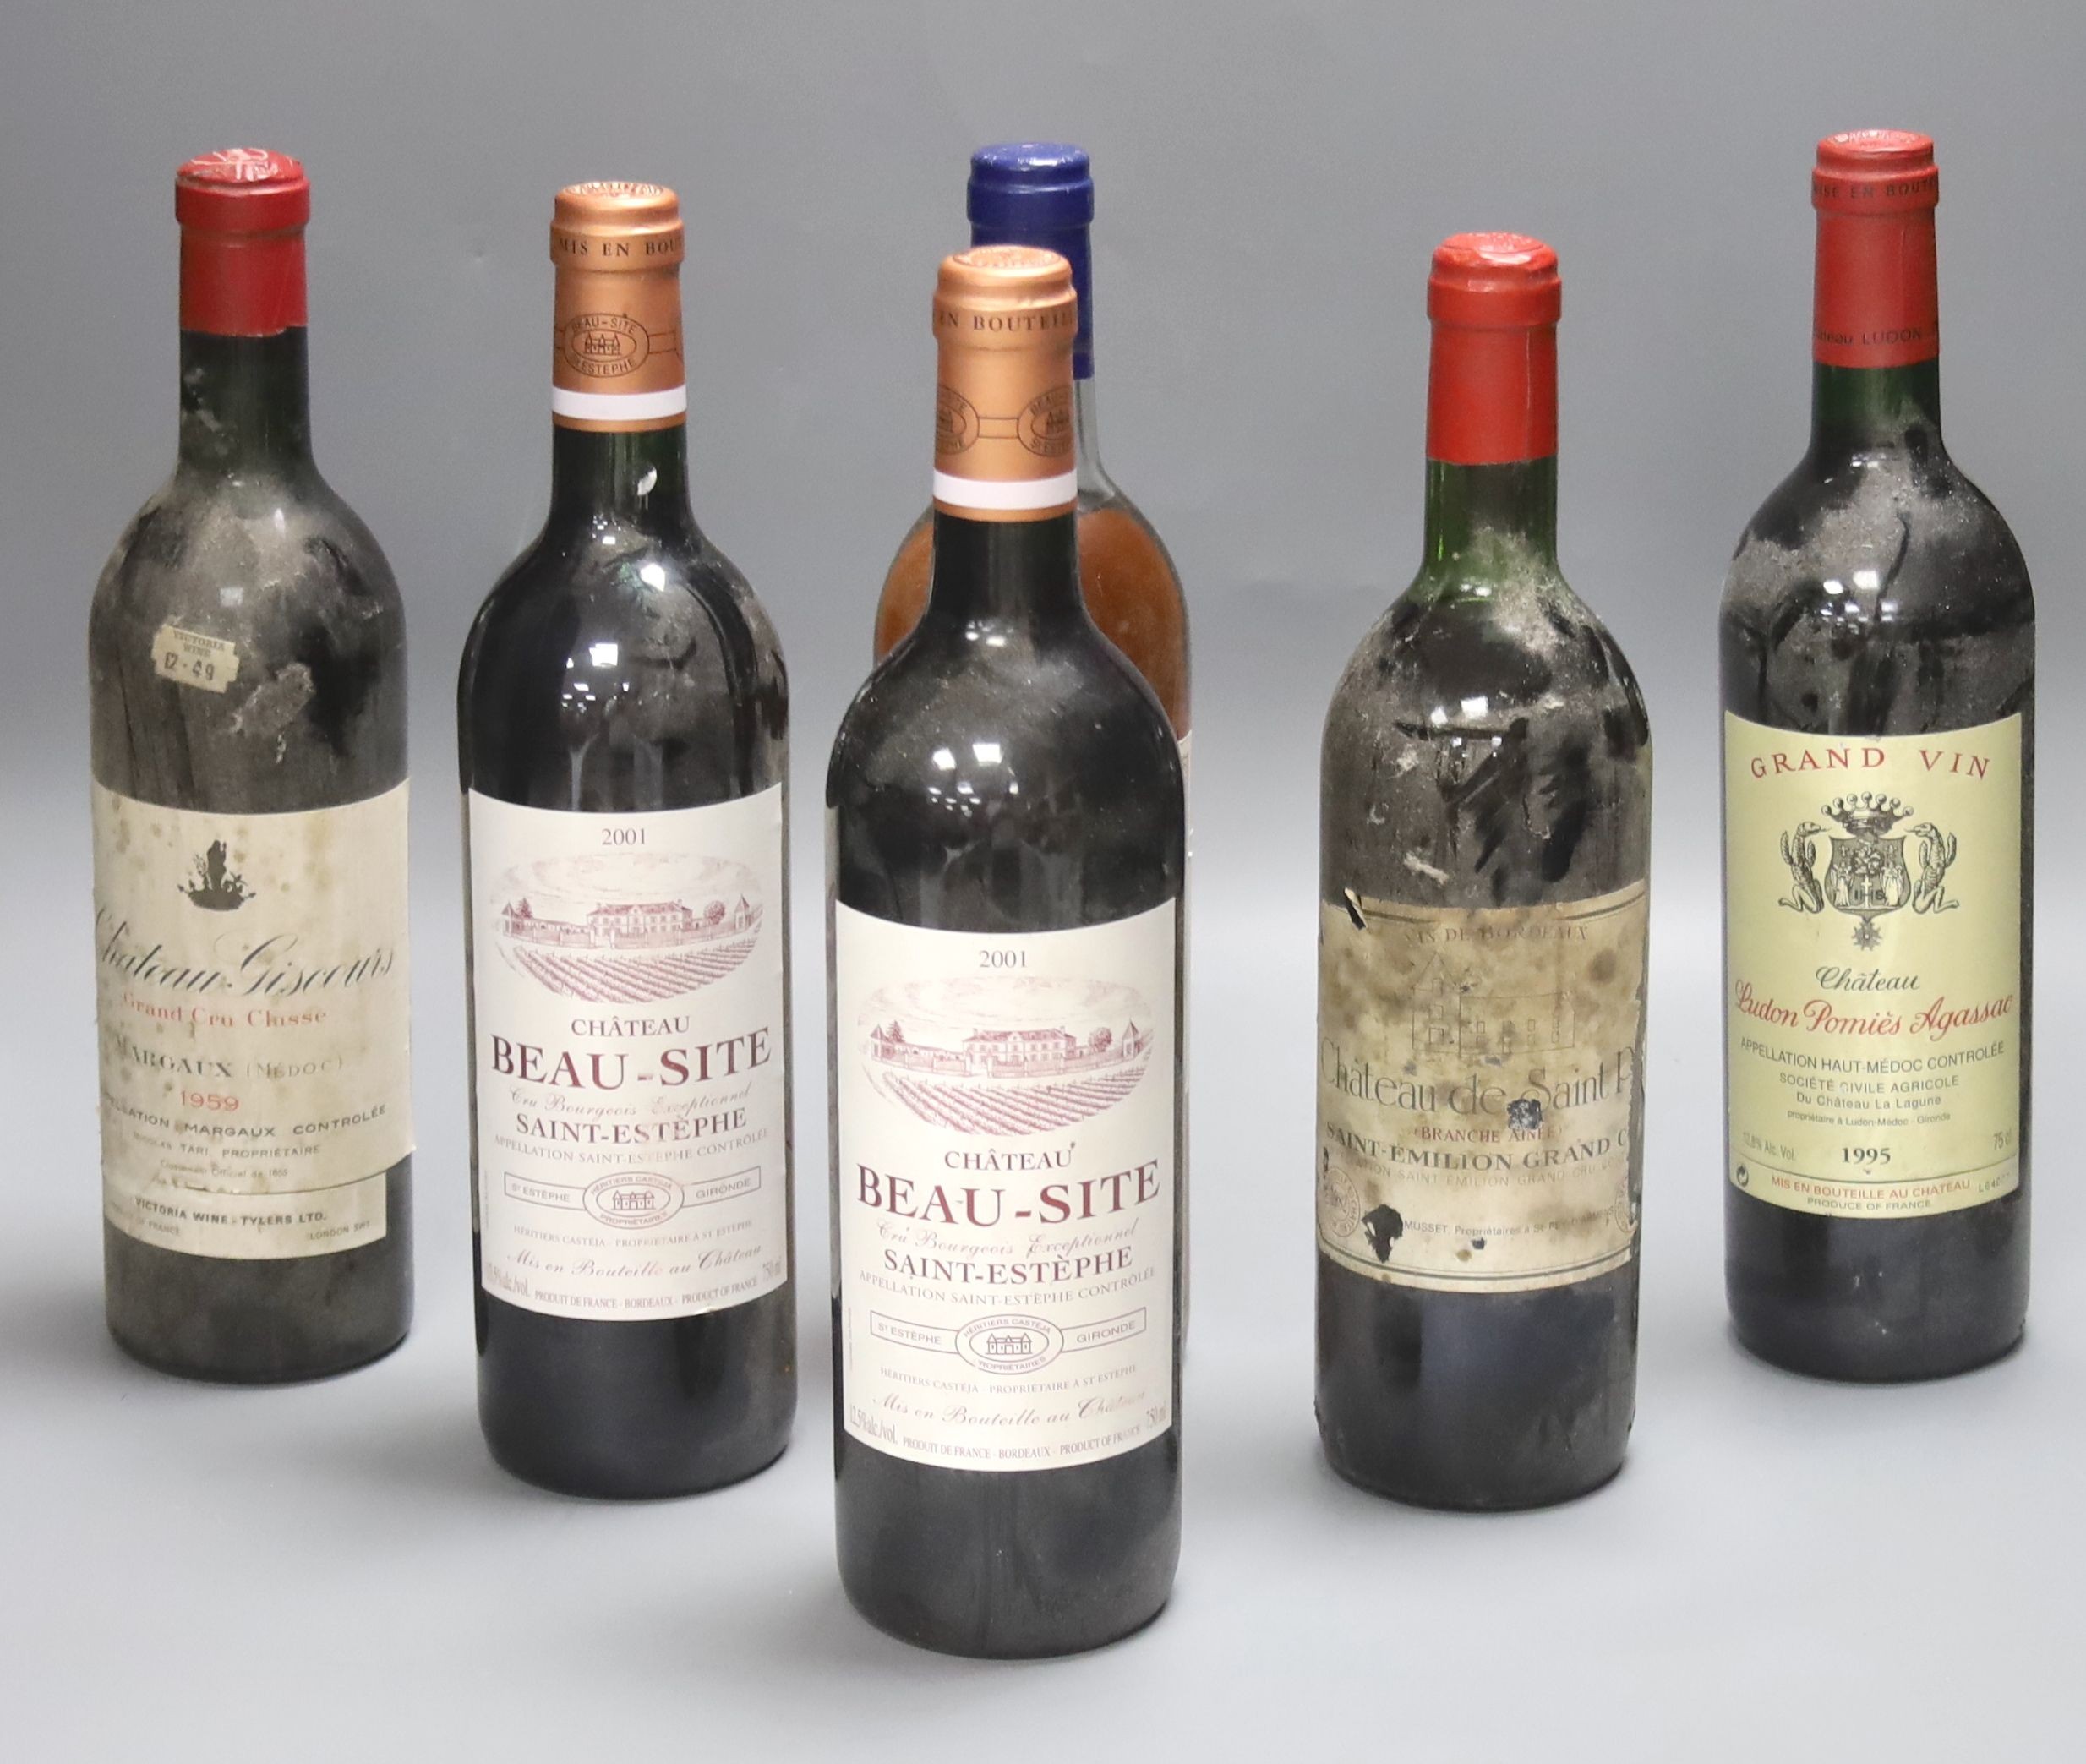 Five red Bordeaux wines including two Chateau Beau Site, Saint Estephe, 2001, one Chateau de Saint Puy, 1982, one Ludon Pomies Agassac, 1995, one Giscours, 1959 and one Les Saintes, Monbazillac, 1989.